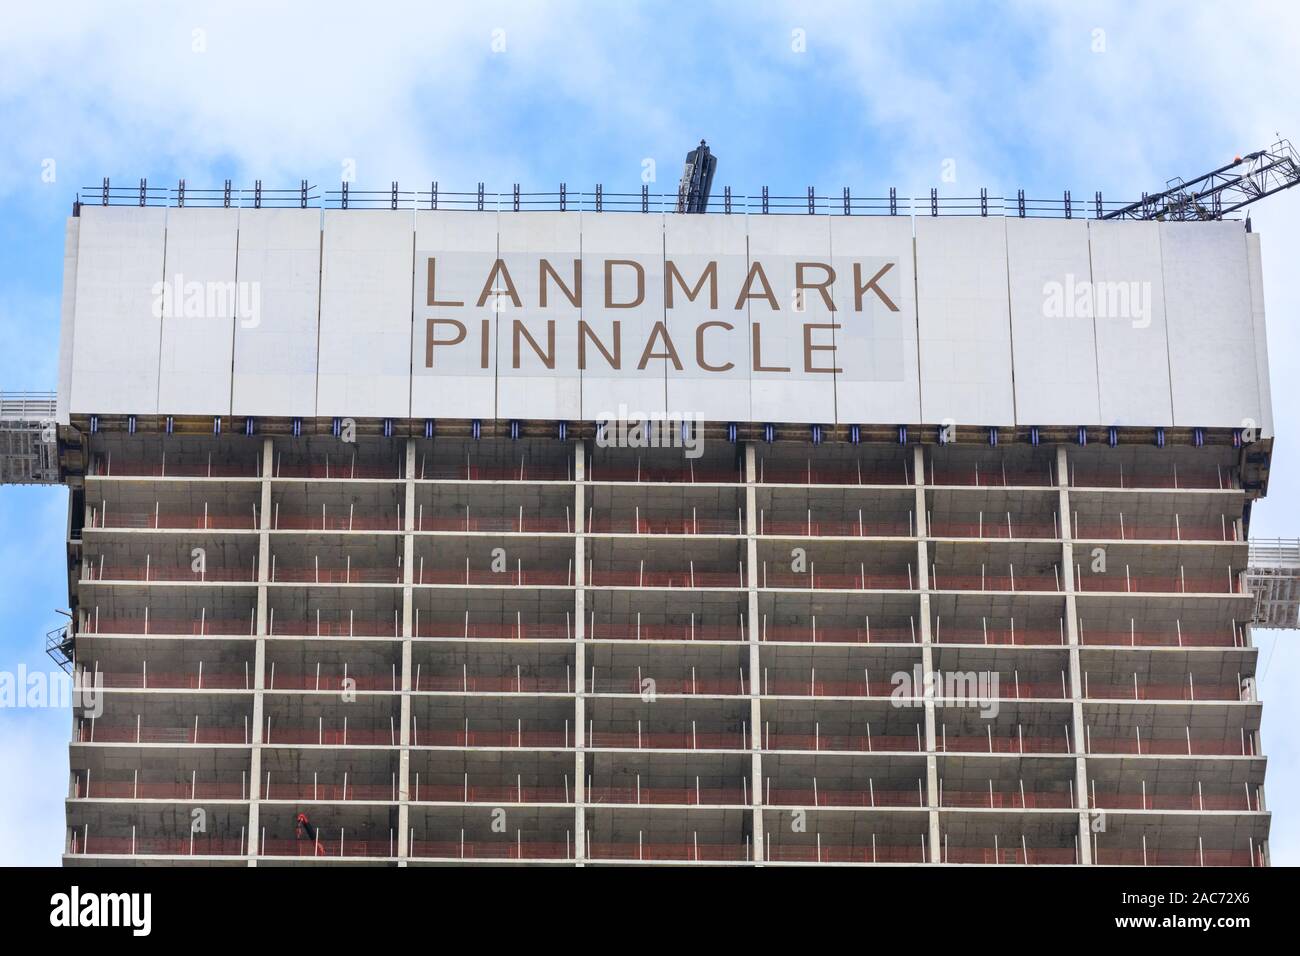 Monument Pinnacle, 233 mètres de haut gratte-ciel de béton en construction à Canary Wharf, London, UK Banque D'Images